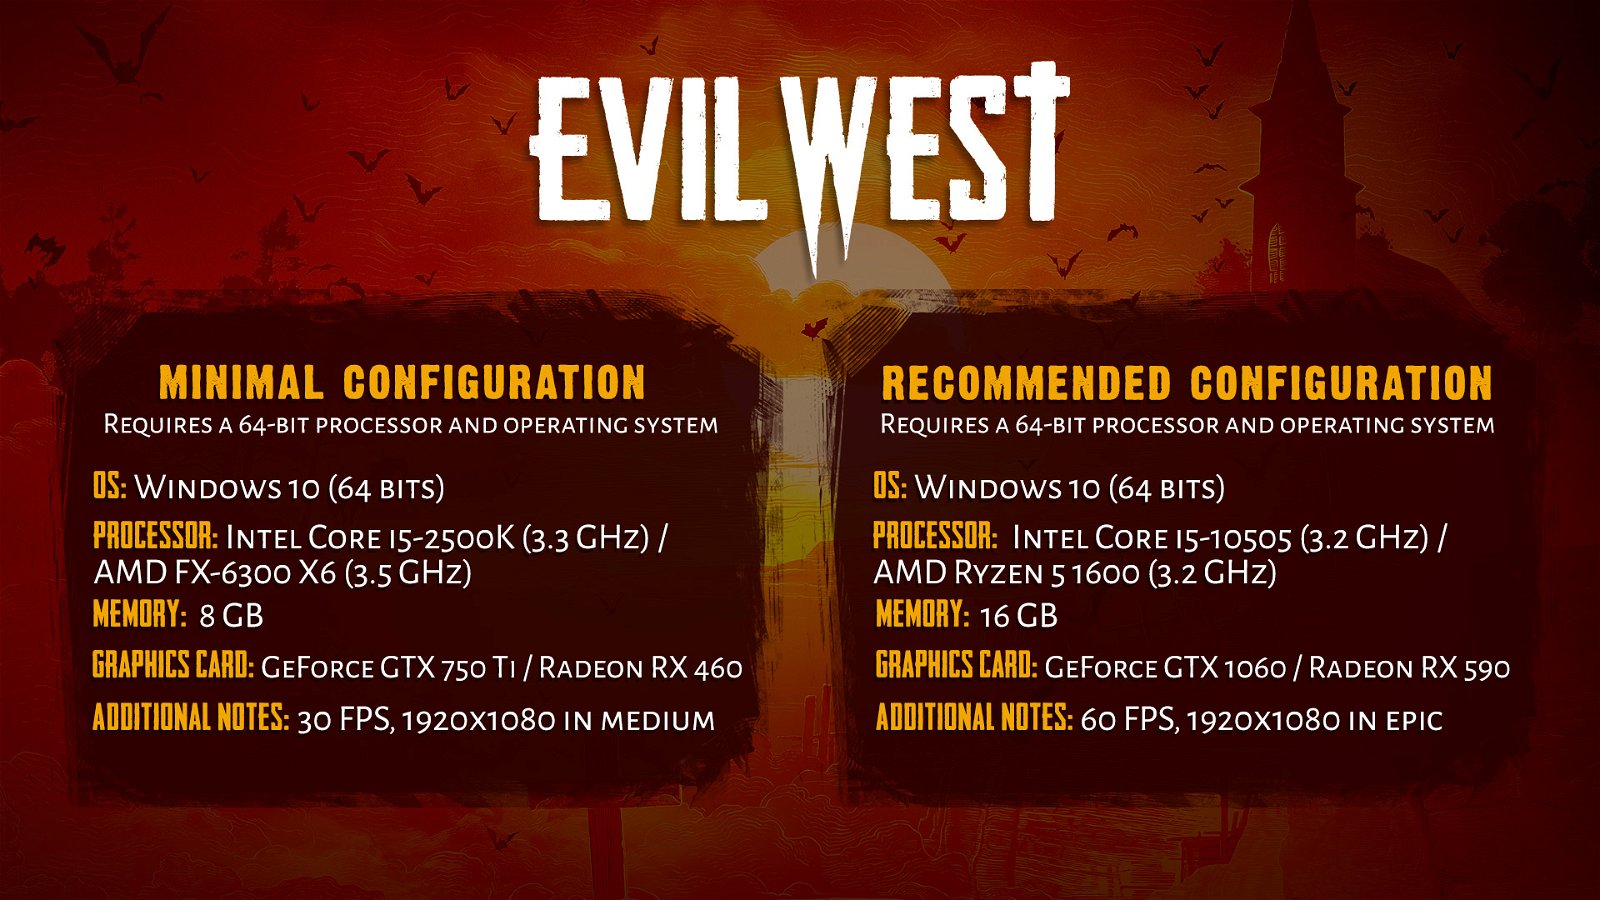 Evil West PC requirements